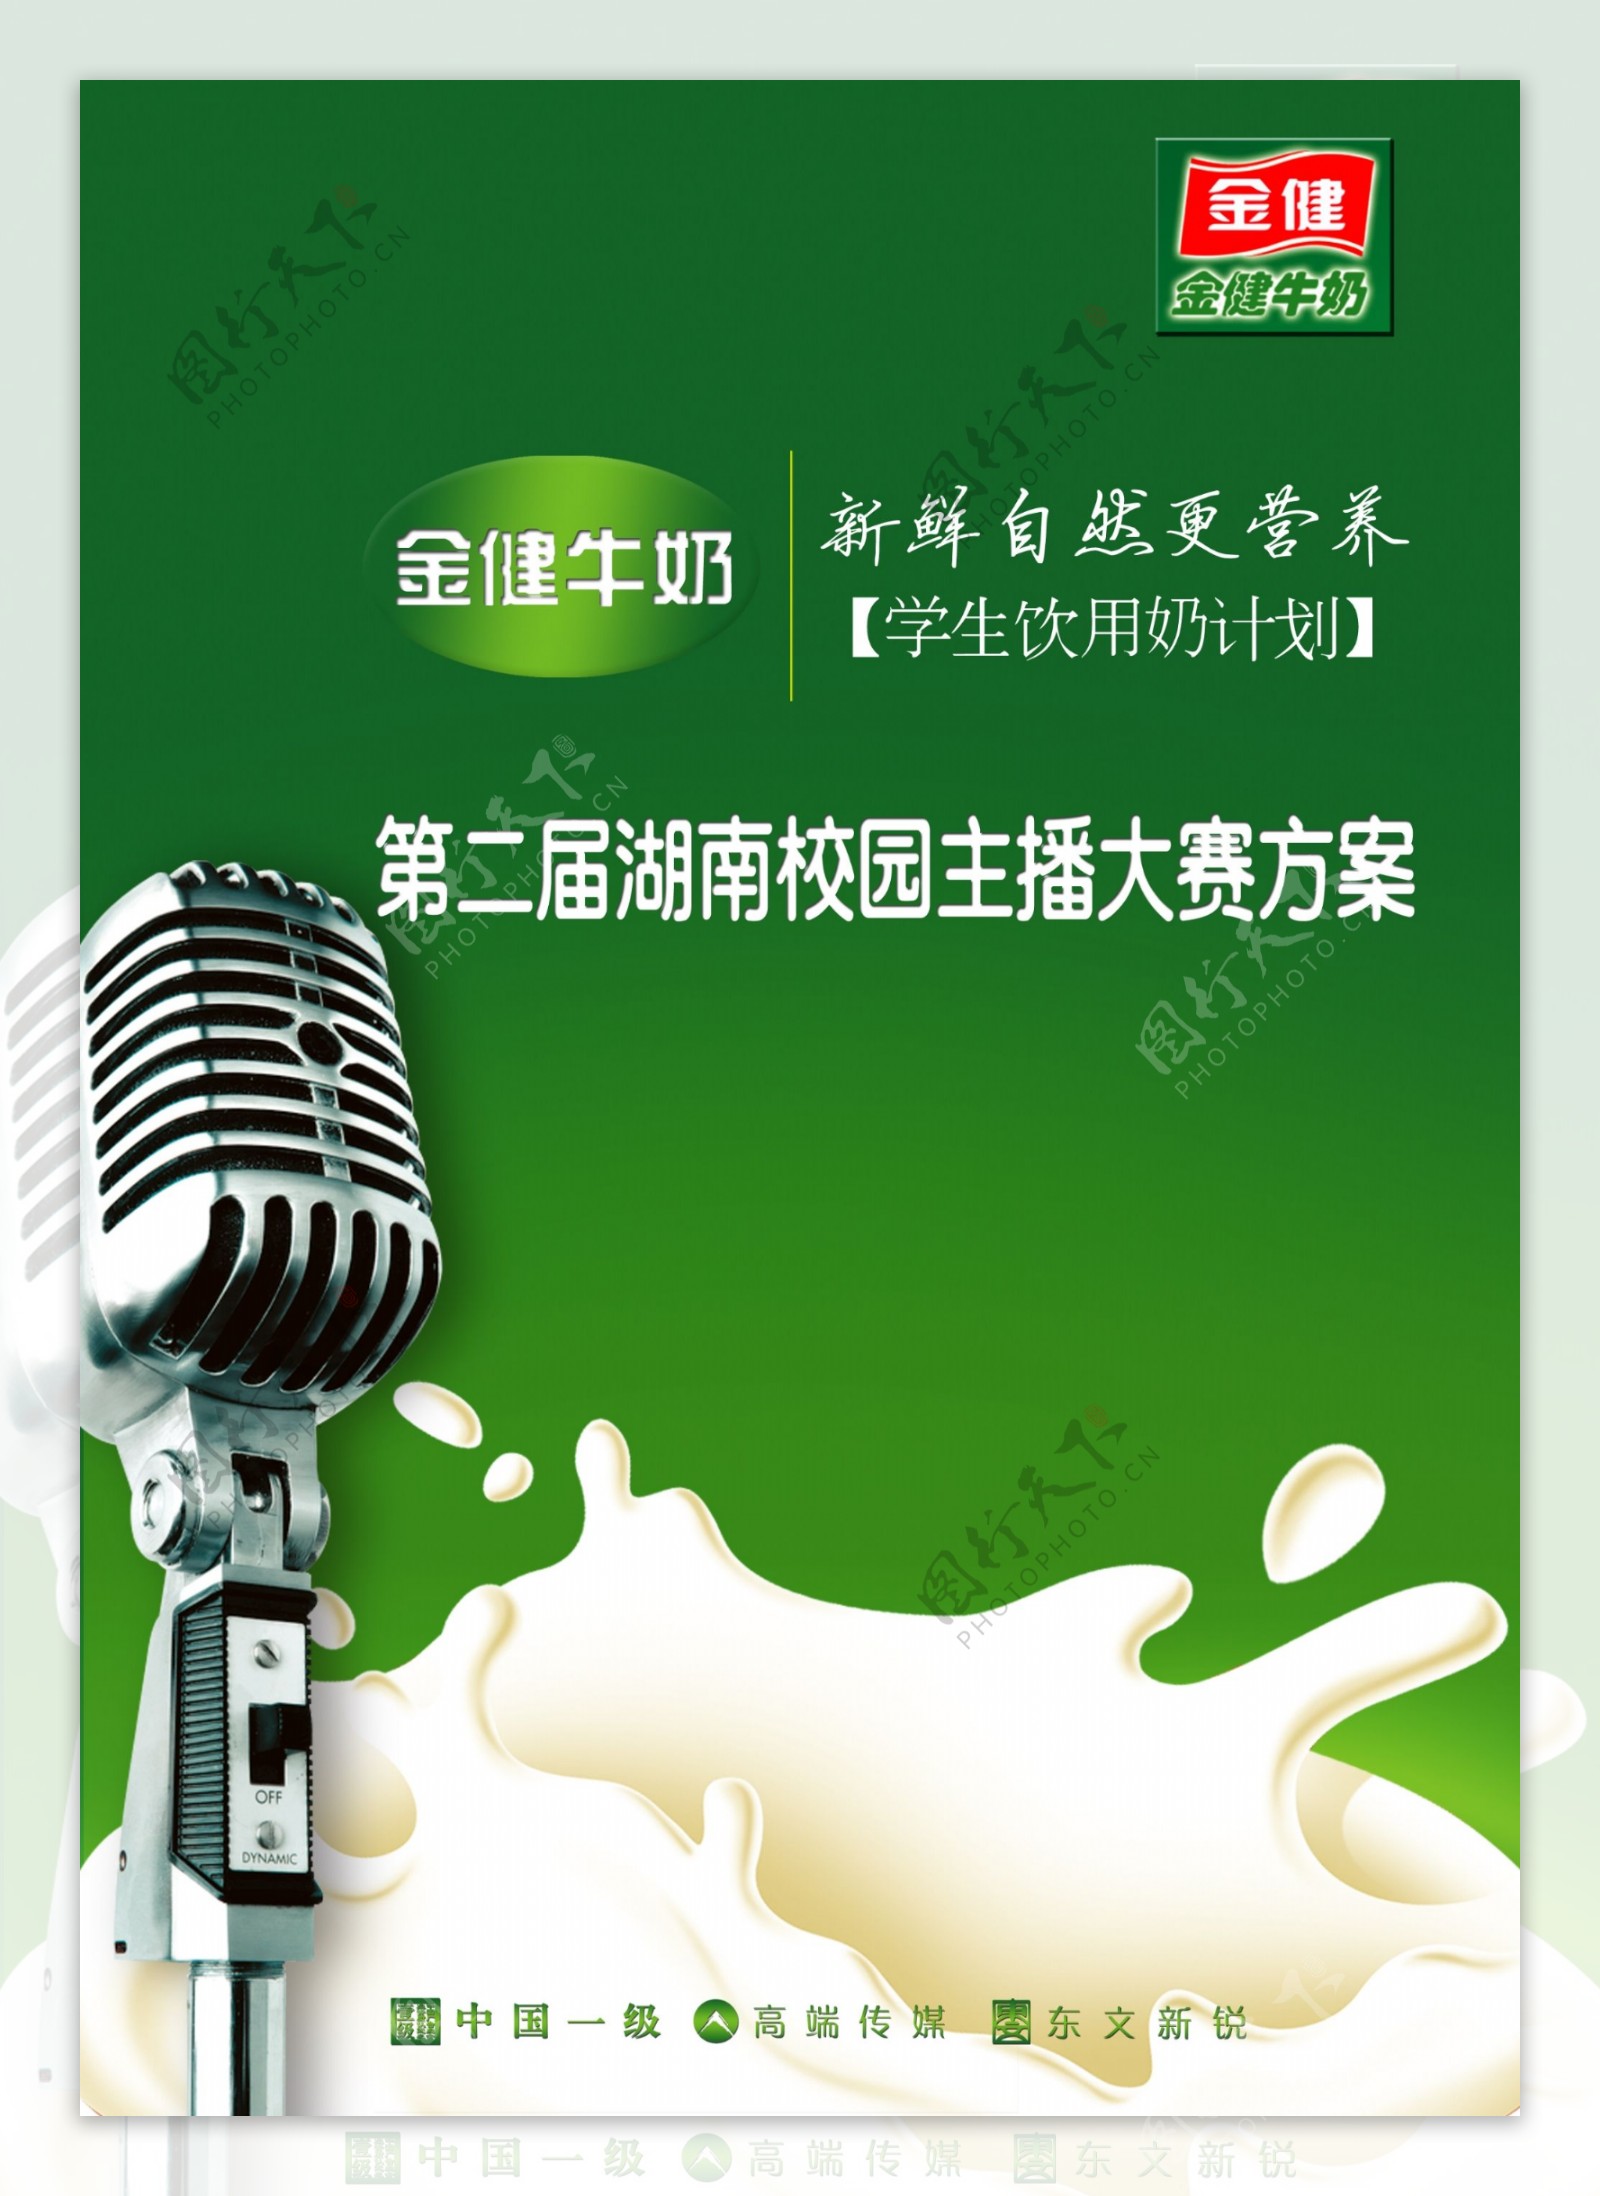 牛奶主题封面设计图片